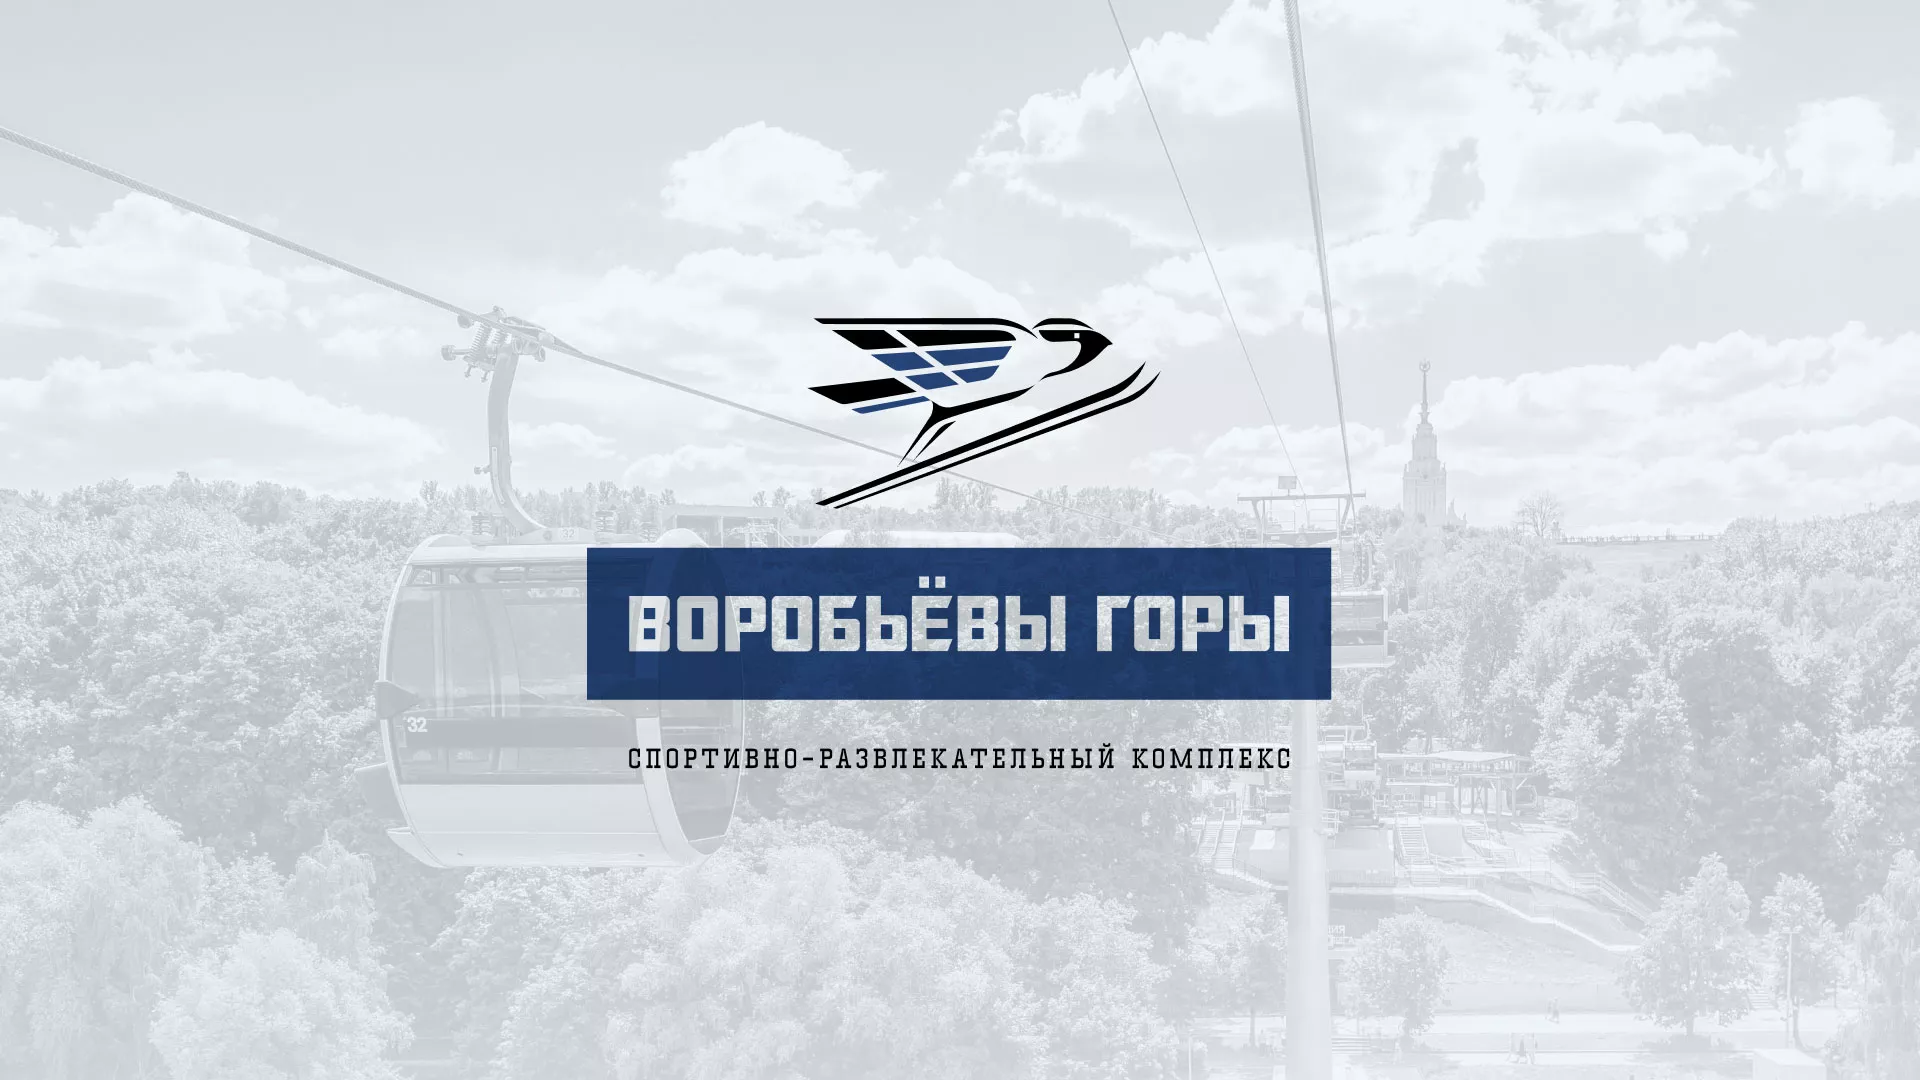 Разработка сайта в Пушкине для спортивно-развлекательного комплекса «Воробьёвы горы»